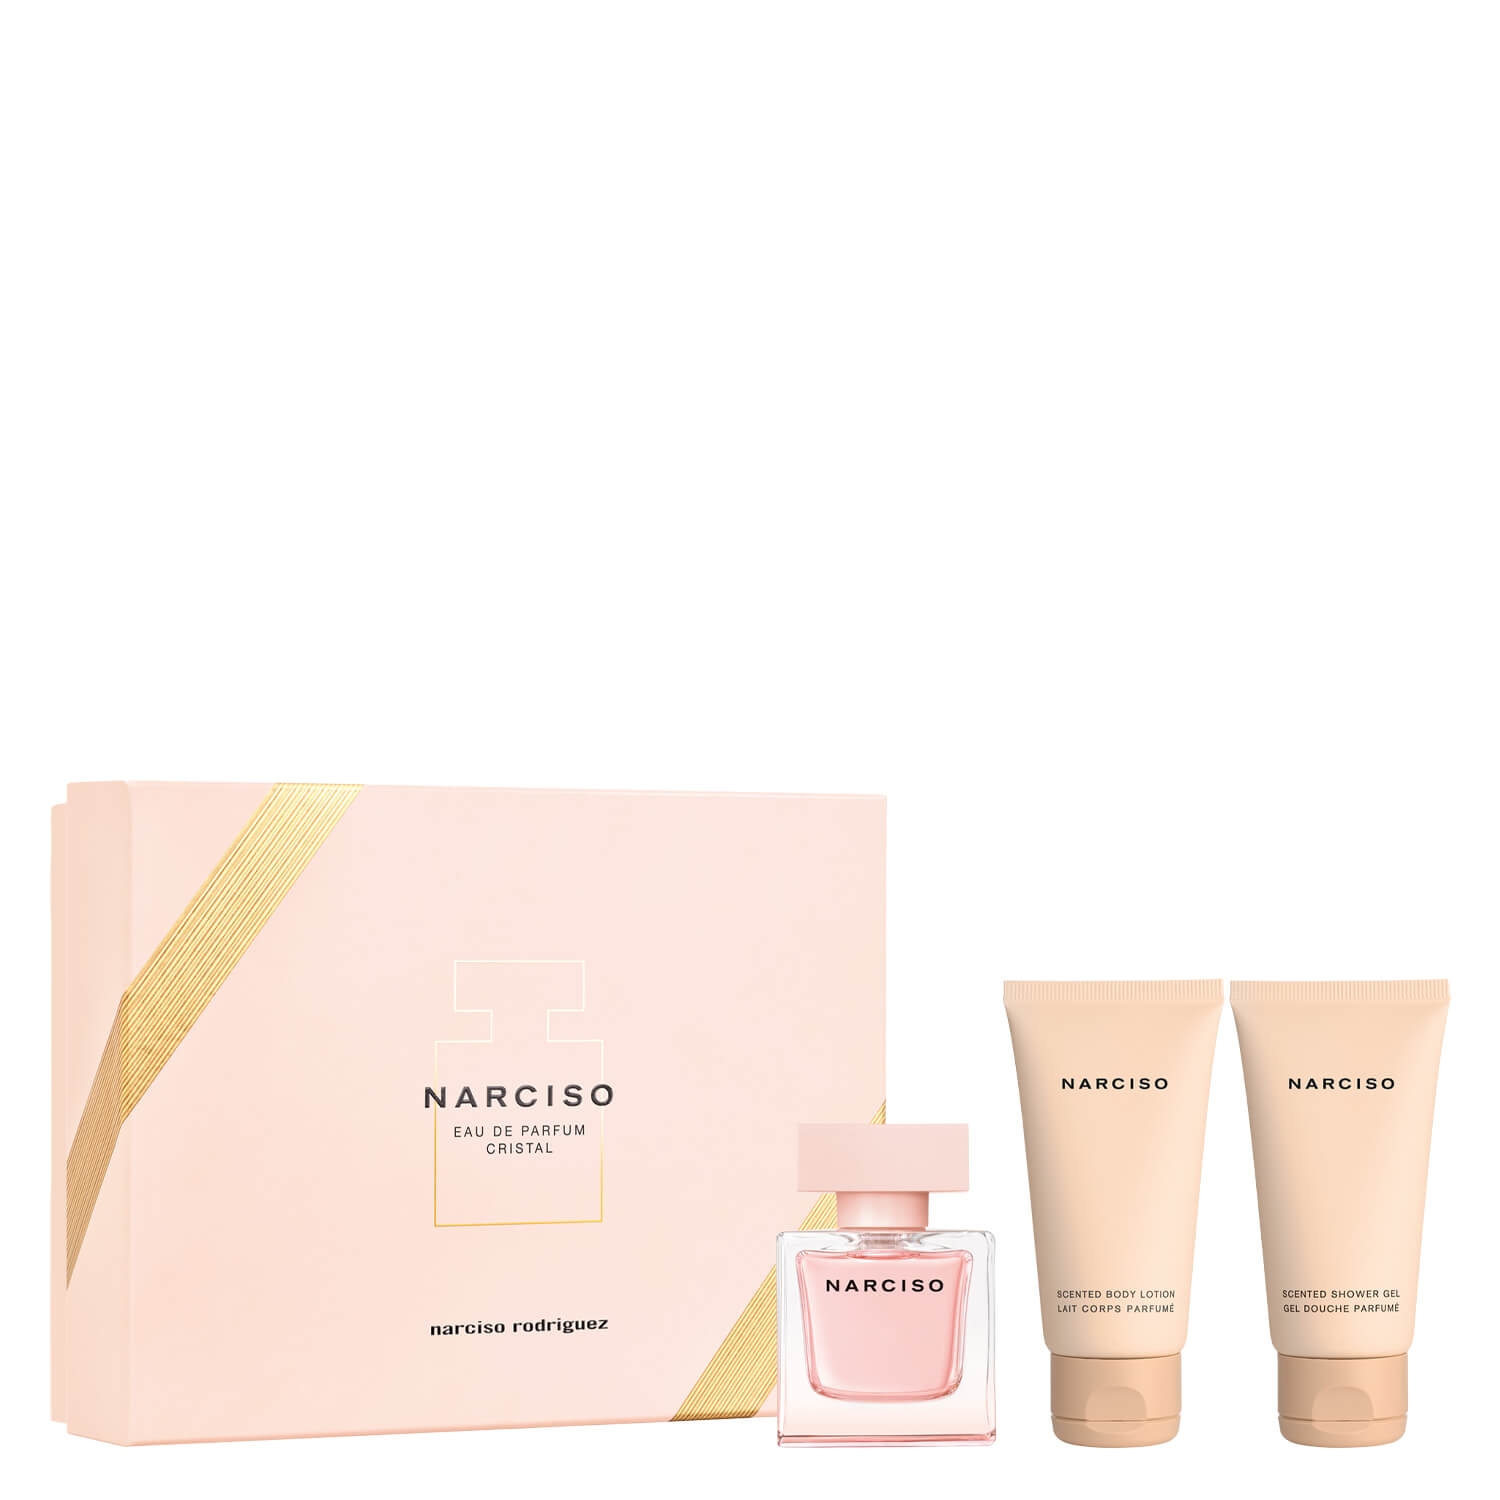 Product image from Narciso – Eau de Parfum Cristal Set